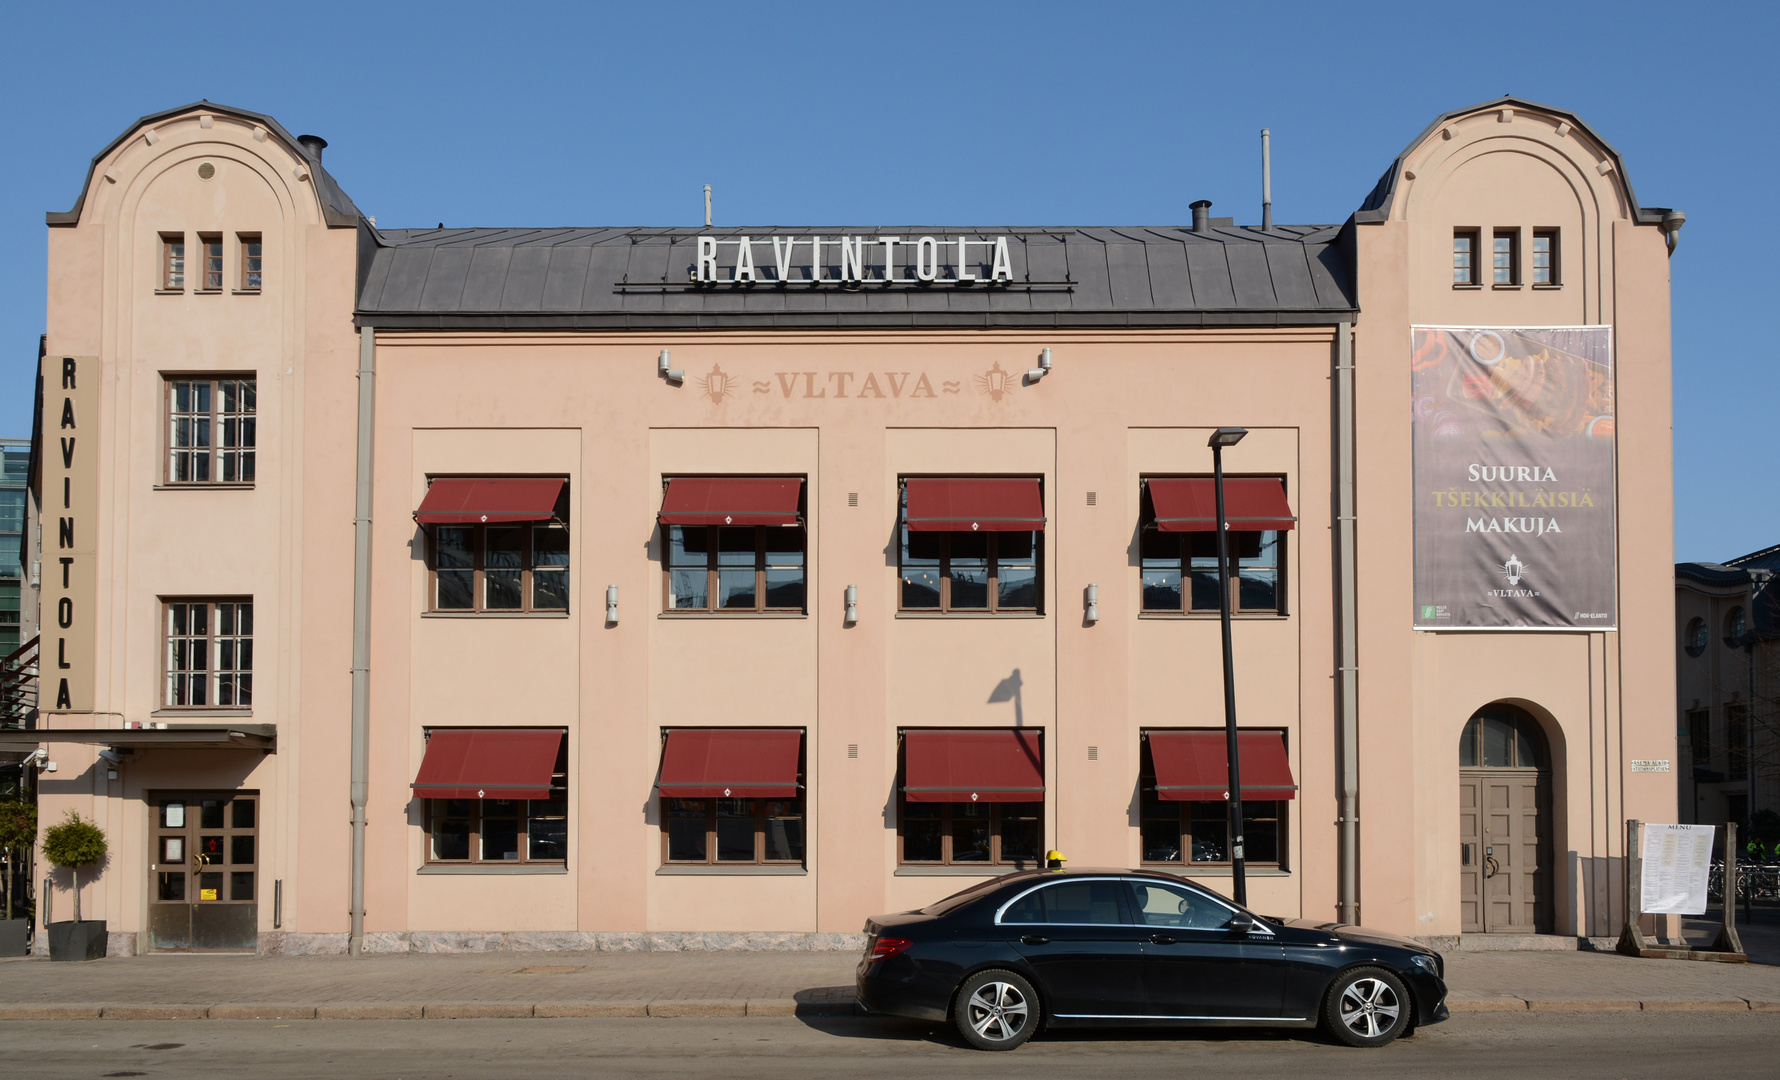 The restaurant Vltava